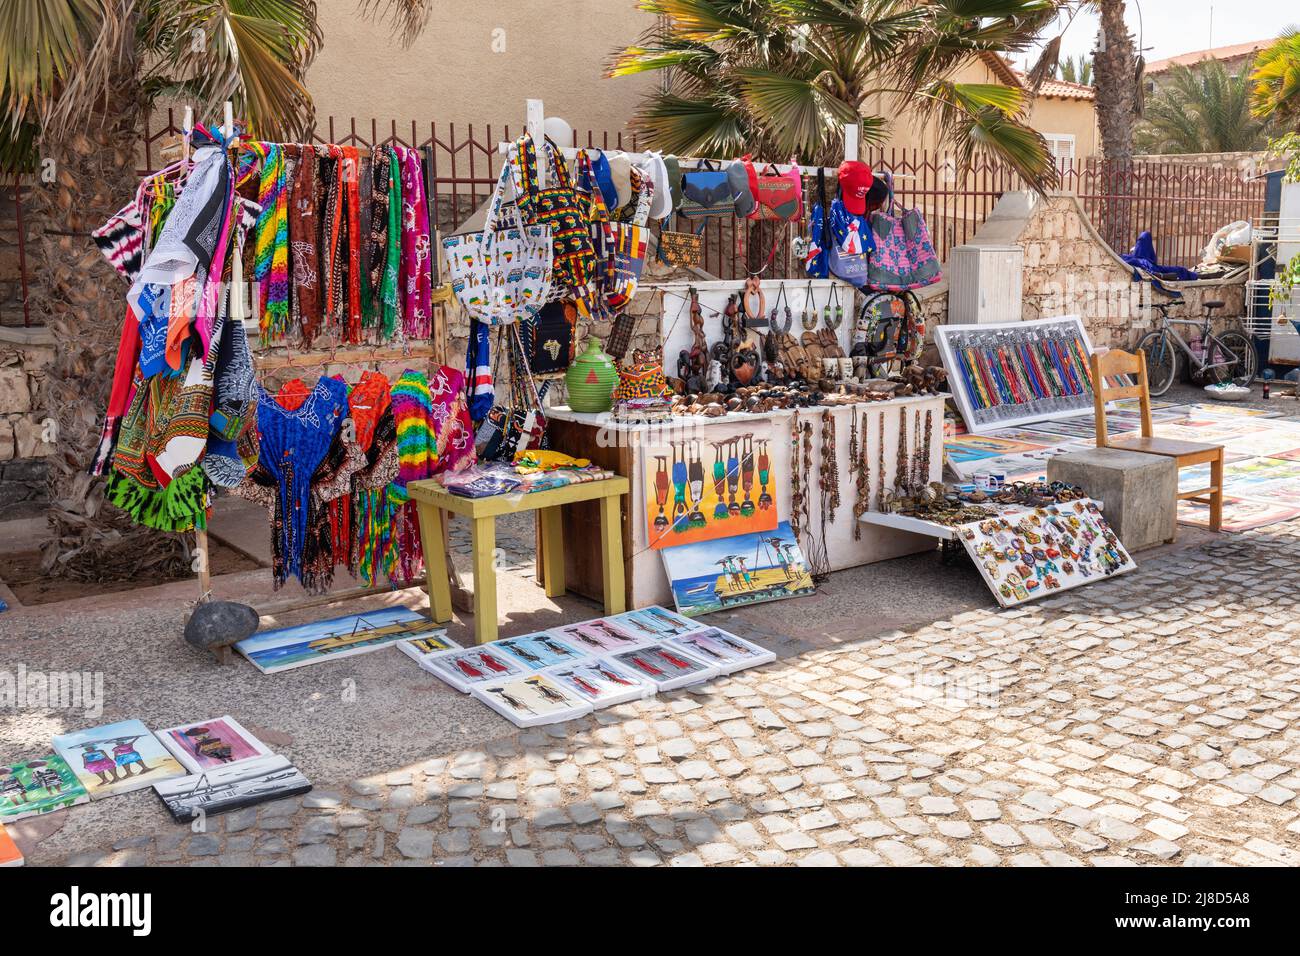 Ein farbenfroher Marktstand eines Straßenverkäufers, der Souvenirs an Touristen verkauft, Santa Maria, Sal, Kap Verde, Cabo Verde Inseln, Afrika Stockfoto